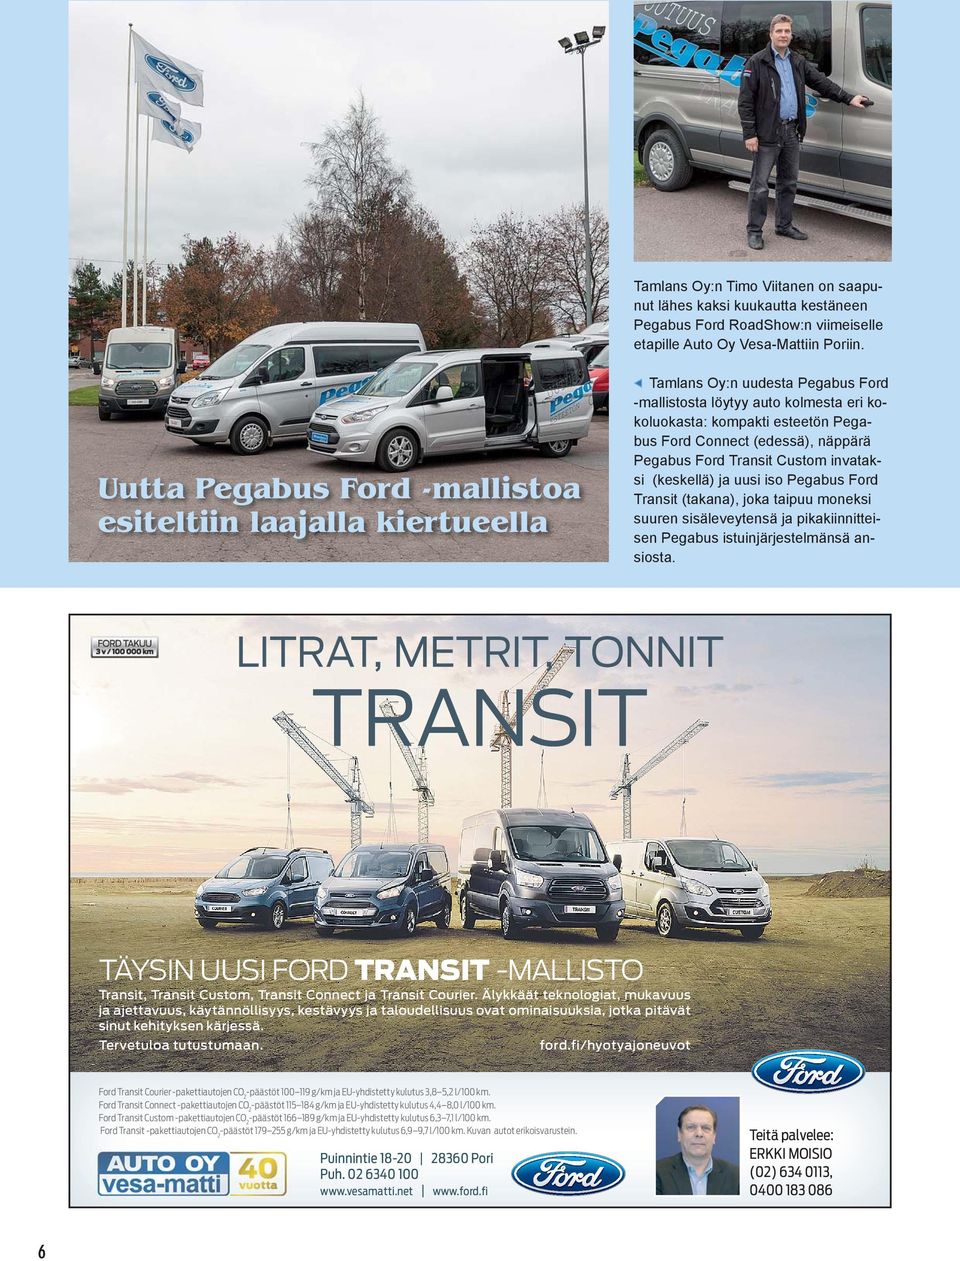 näppärä Pegabus Ford Transit Custom invataksi (keskellä) ja uusi iso Pegabus Ford Transit (takana), joka taipuu moneksi suuren sisäleveytensä ja pikakiinnitteisen Pegabus istuinjärjestelmänsä